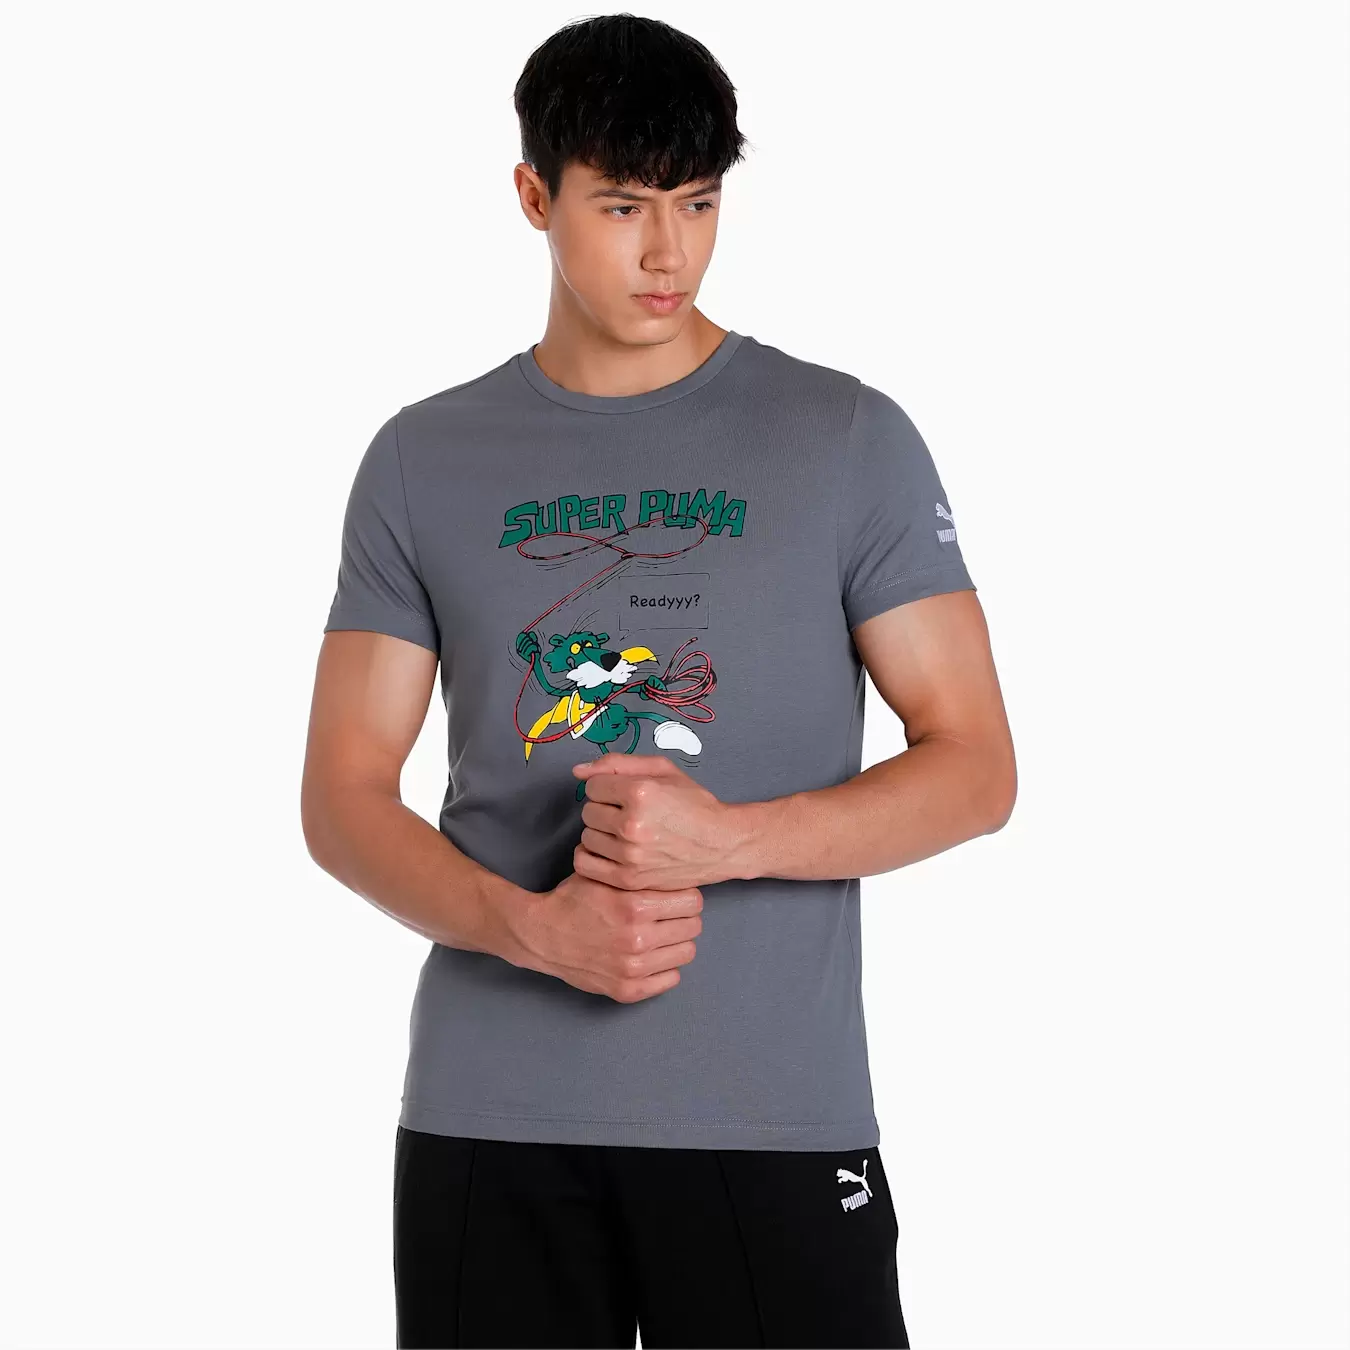 Super Puma Graphic Men's T-Shirt